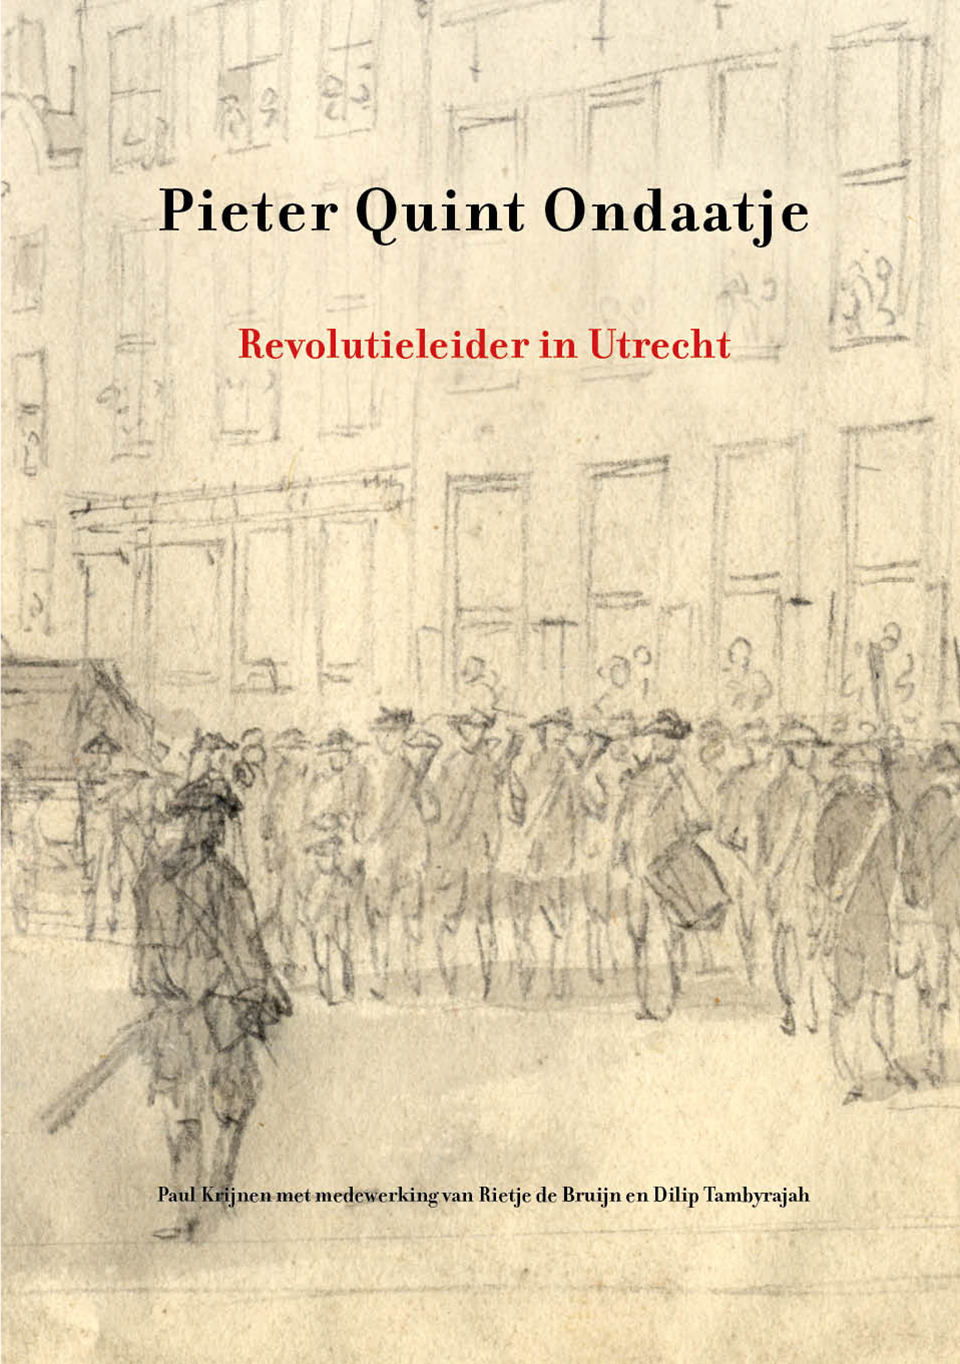 Pieter Quint Ondaatje - Revolutieleider in Utrecht